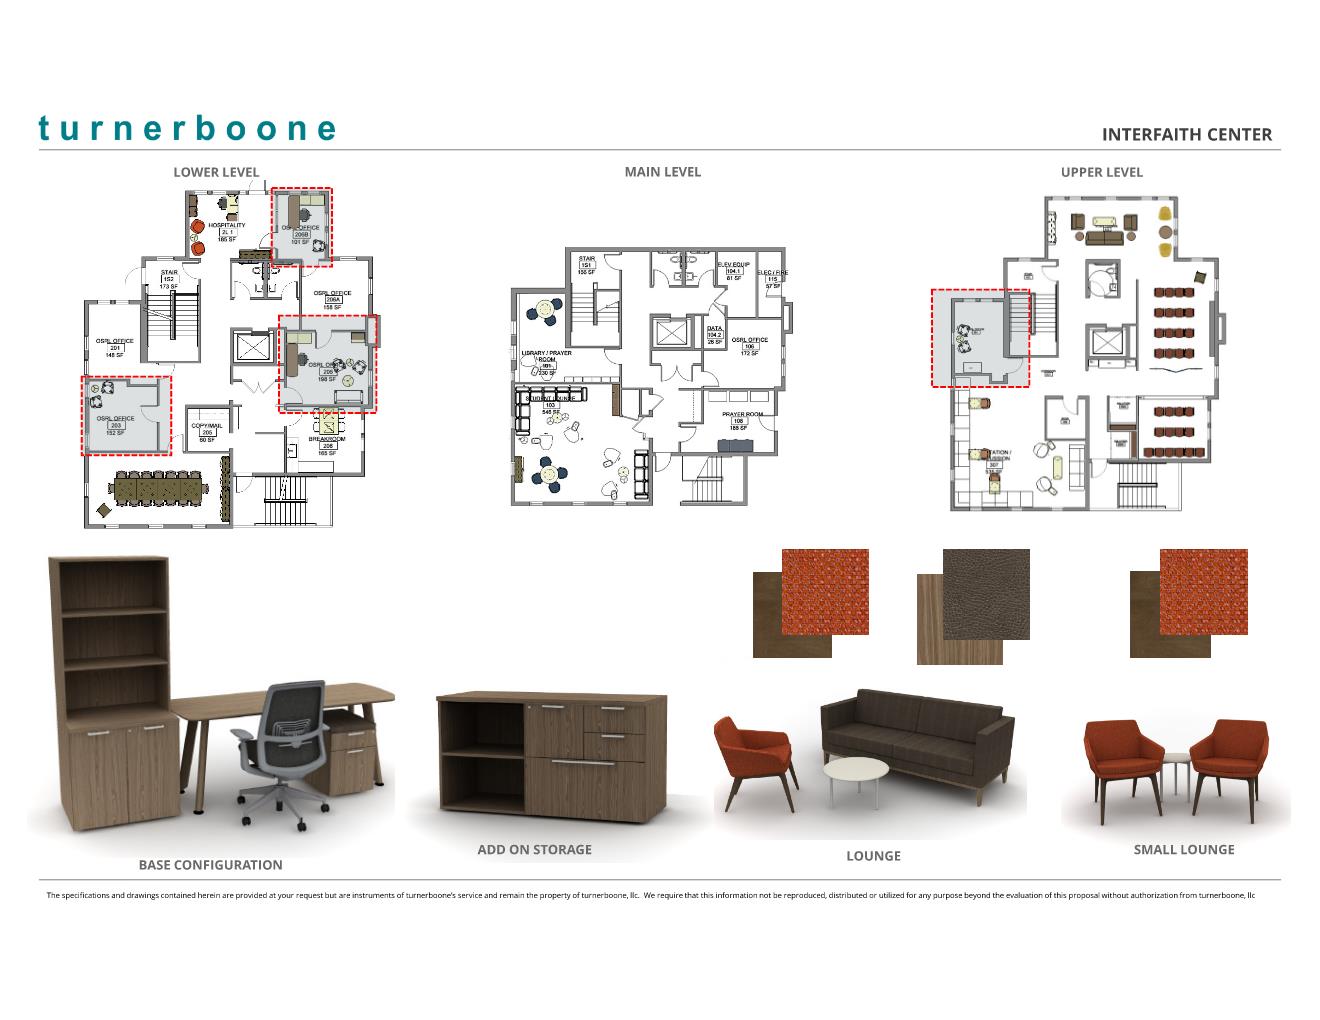 floor plan & furniture